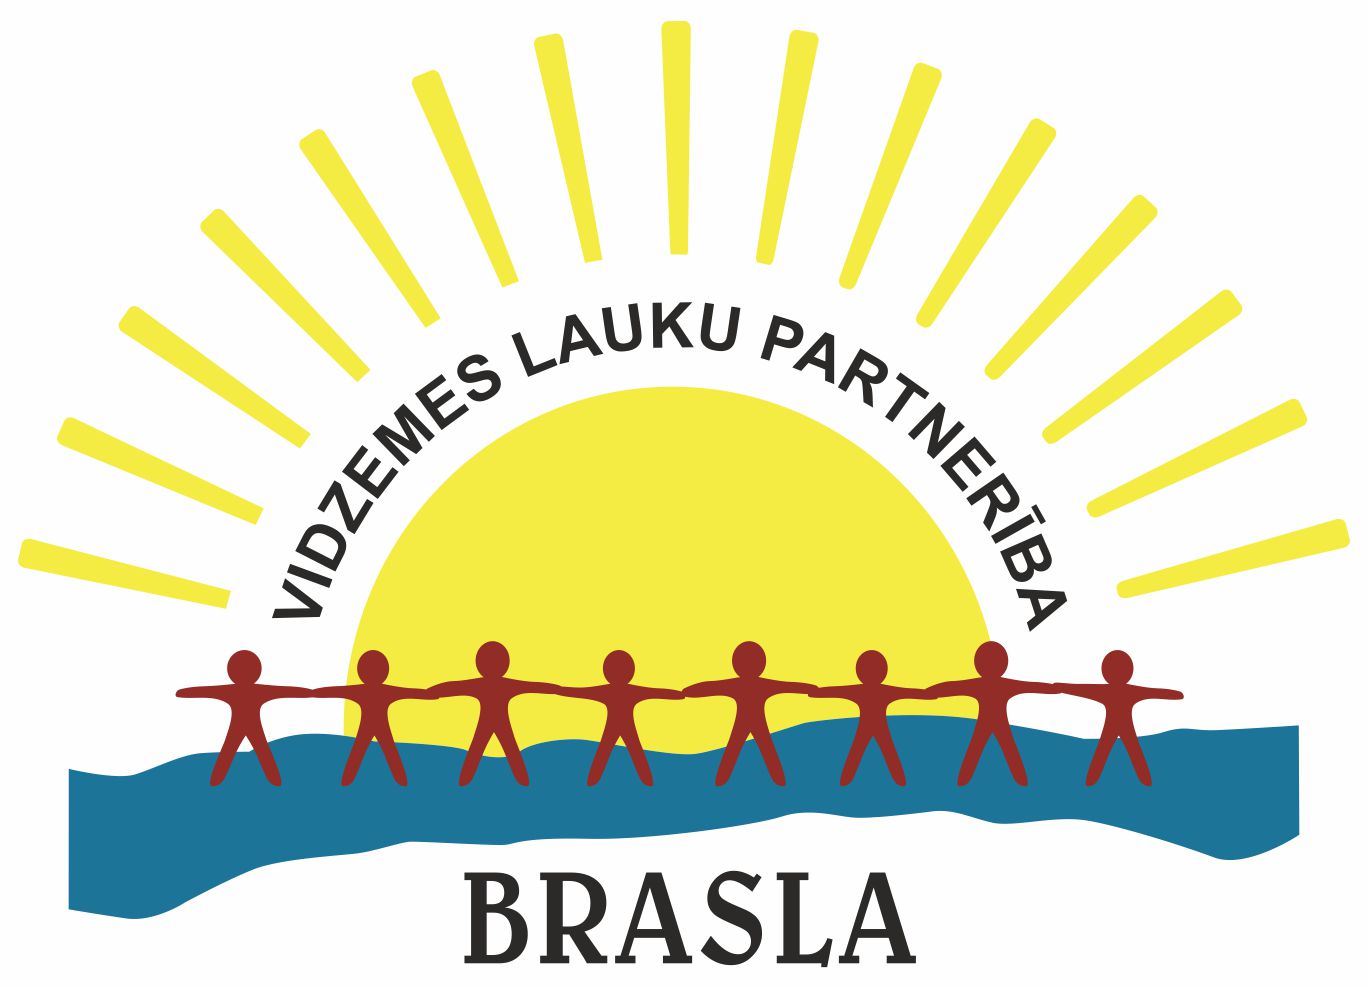 Brasla logo.jpg